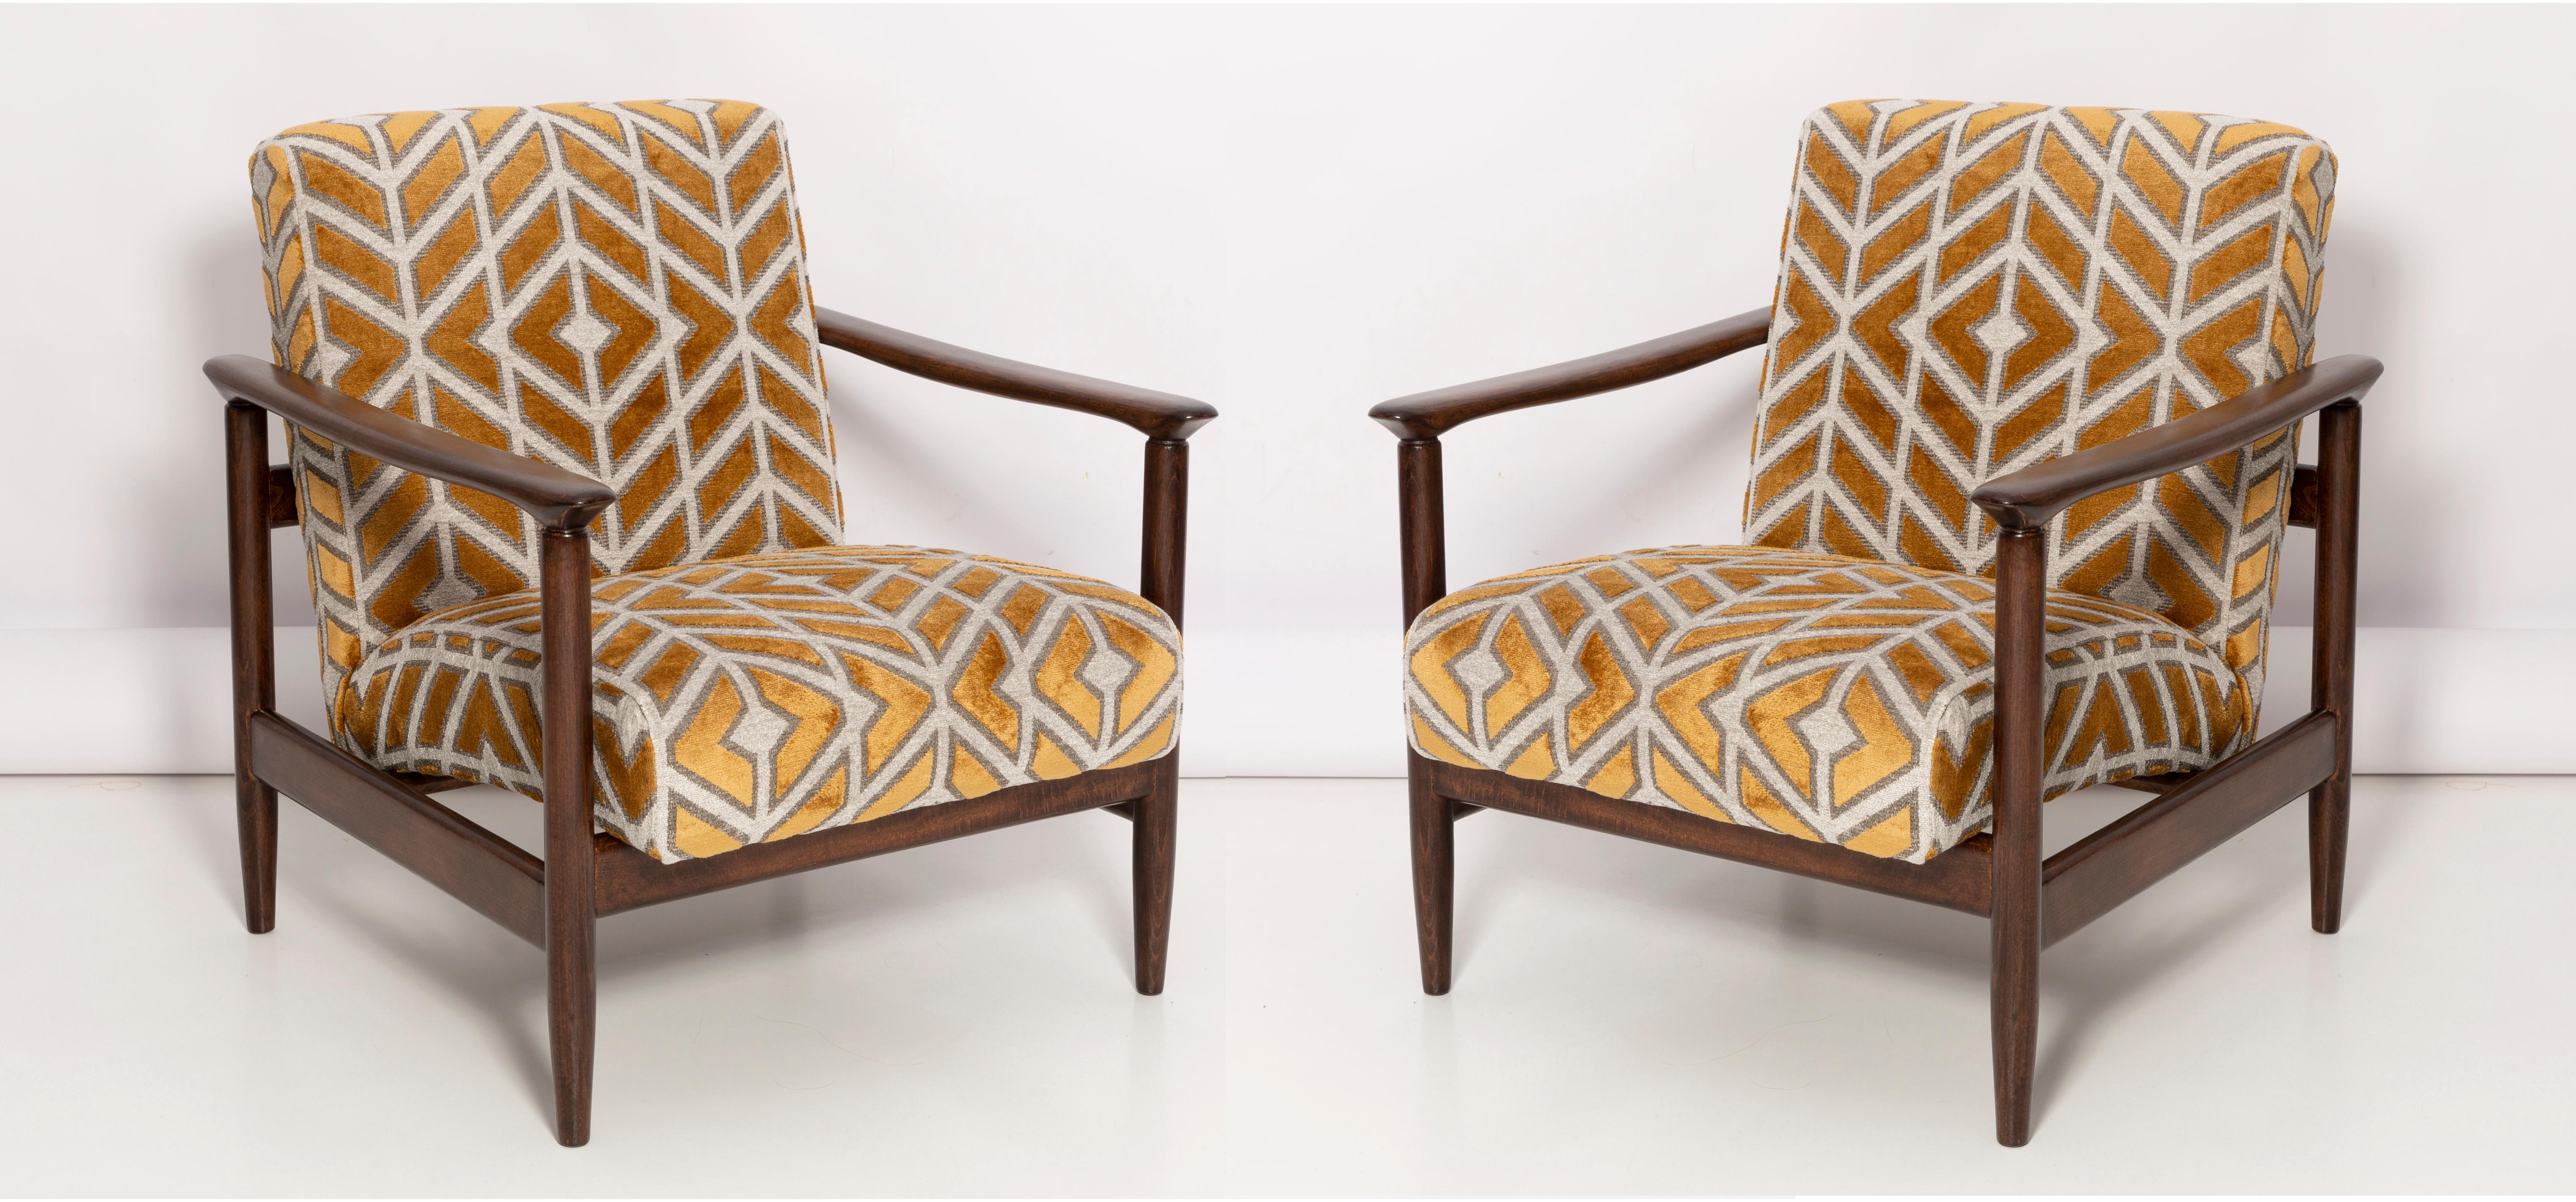 Ein Paar Sessel GFM-142, entworfen von Edmund Homa. Die Sessel wurden in den 1960er Jahren in der Möbelfabrik Gosciecinska hergestellt. Sie sind aus massivem Buchenholz gefertigt. Der GFM-142 Sessel gilt als einer der besten polnischen Sesseldesigns